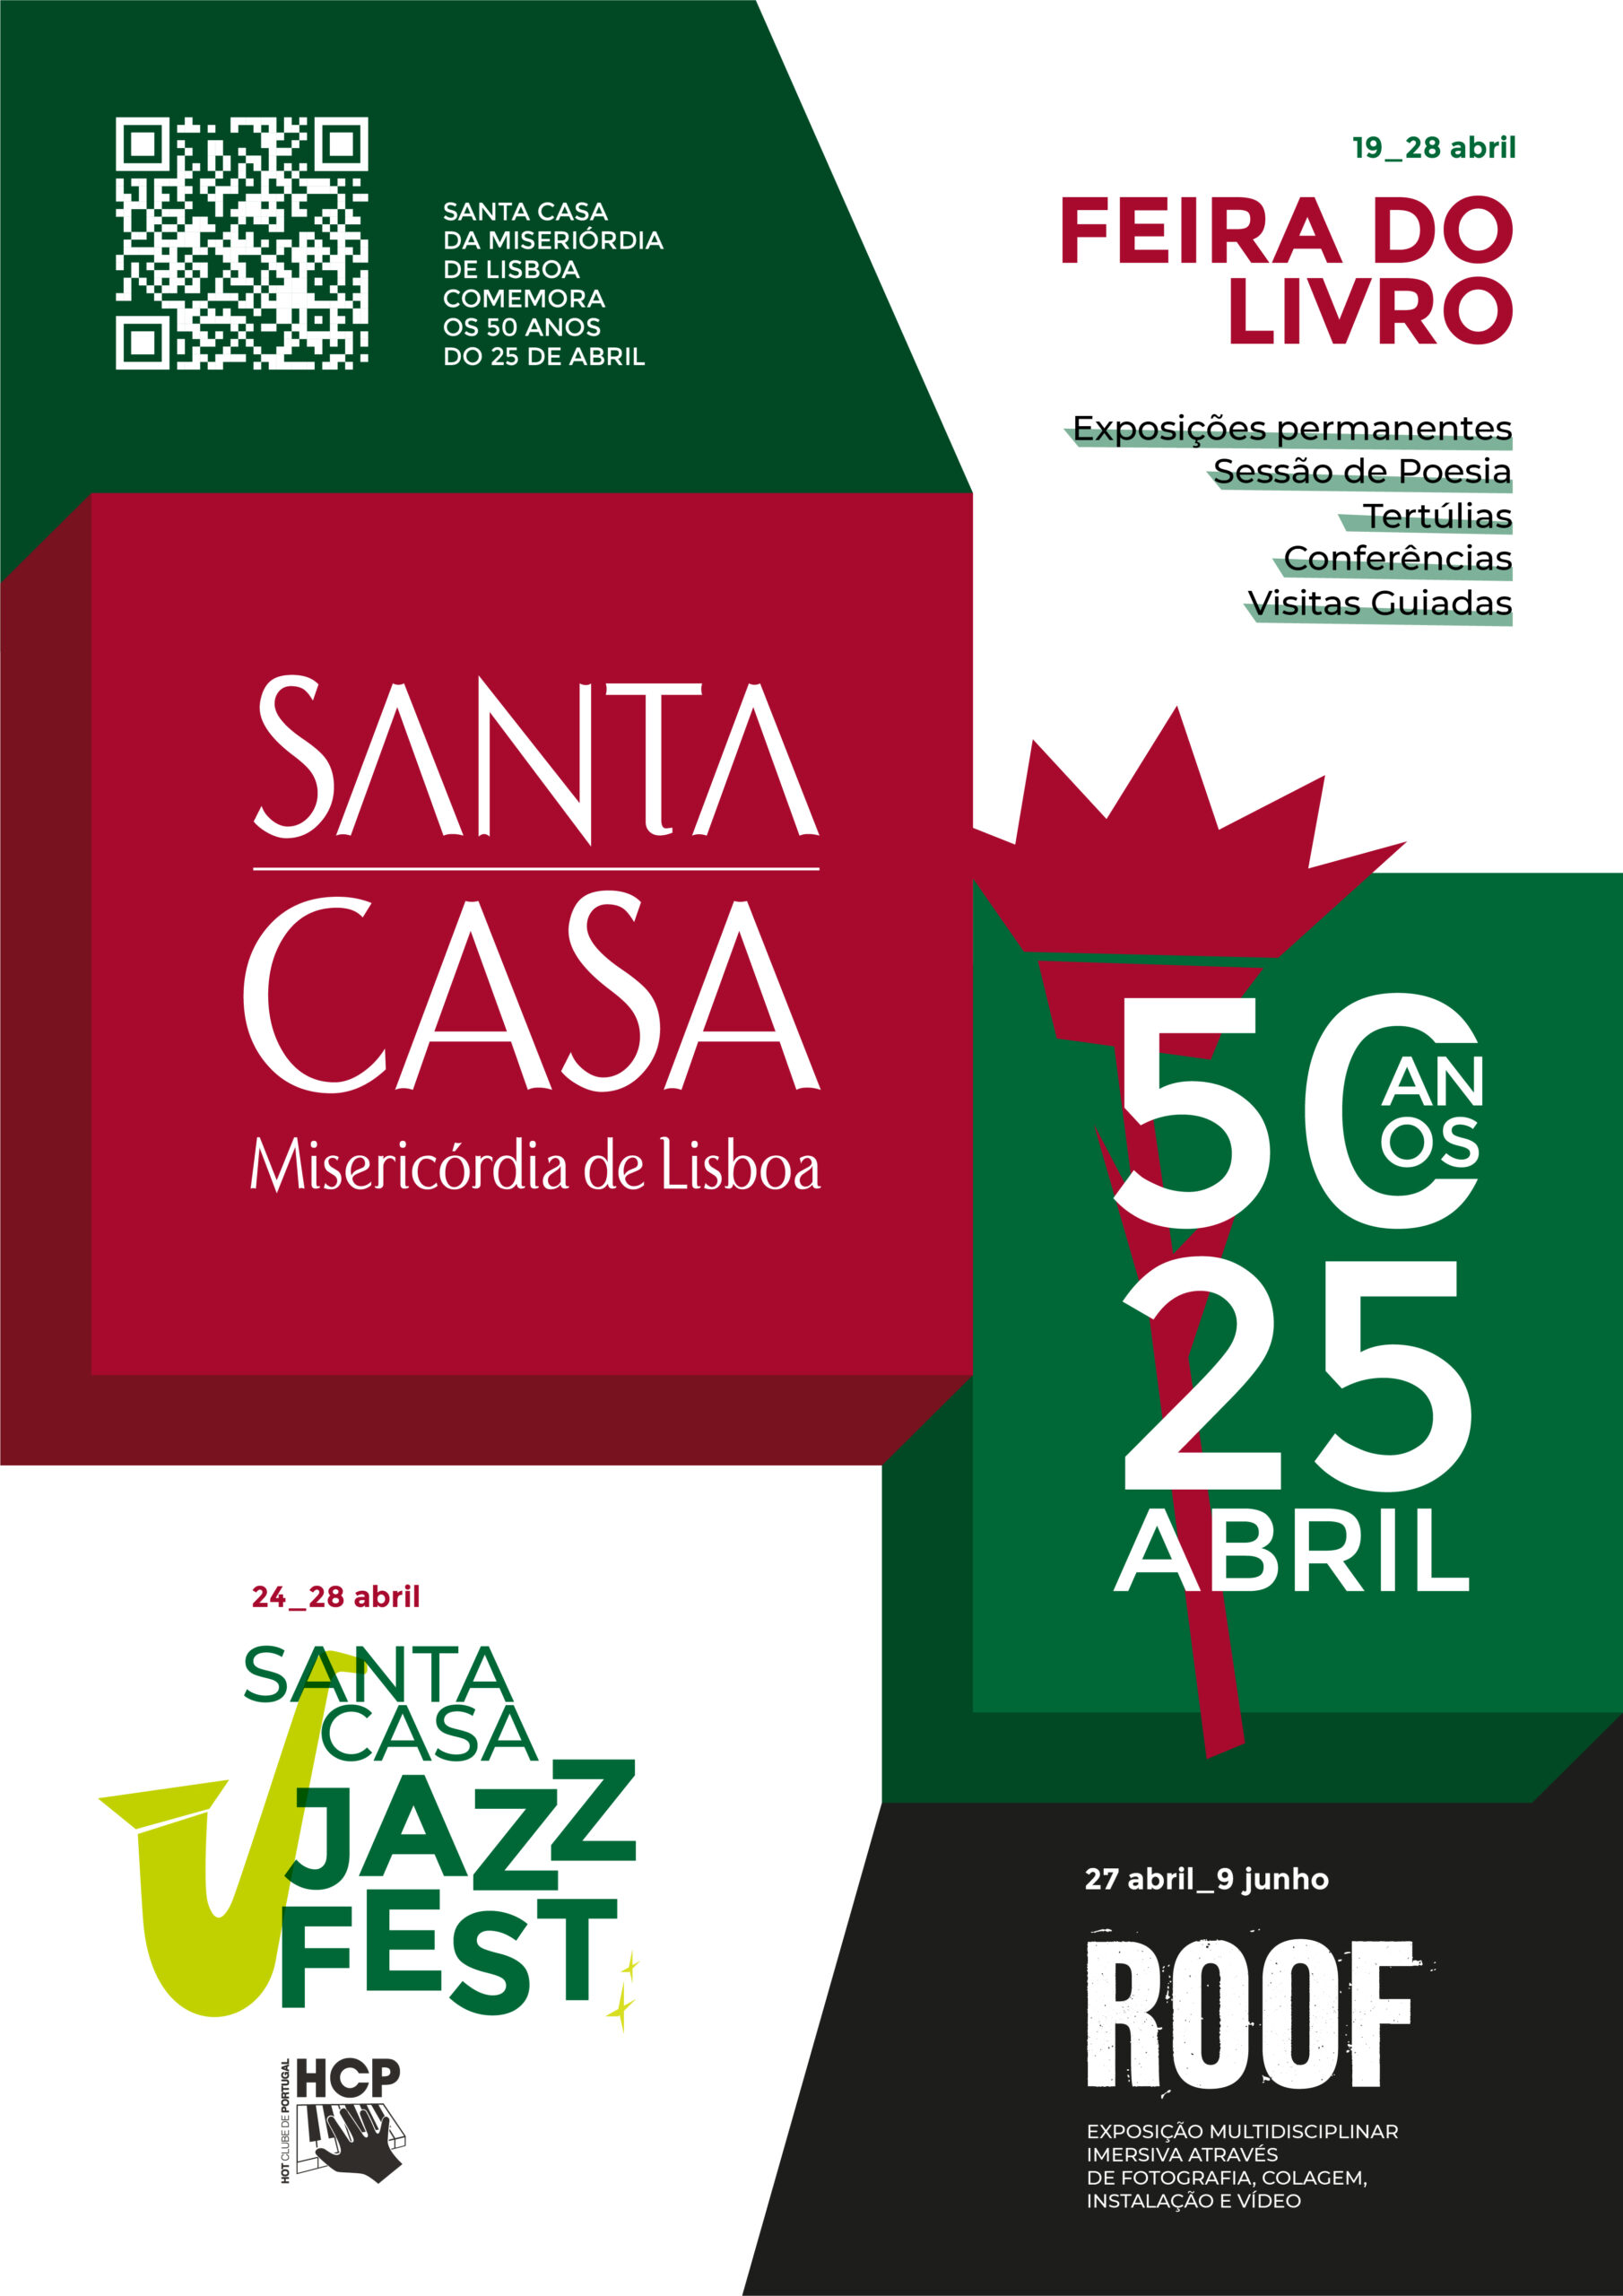 Capa Oficial do Evento Santa Casa Jazz Fest